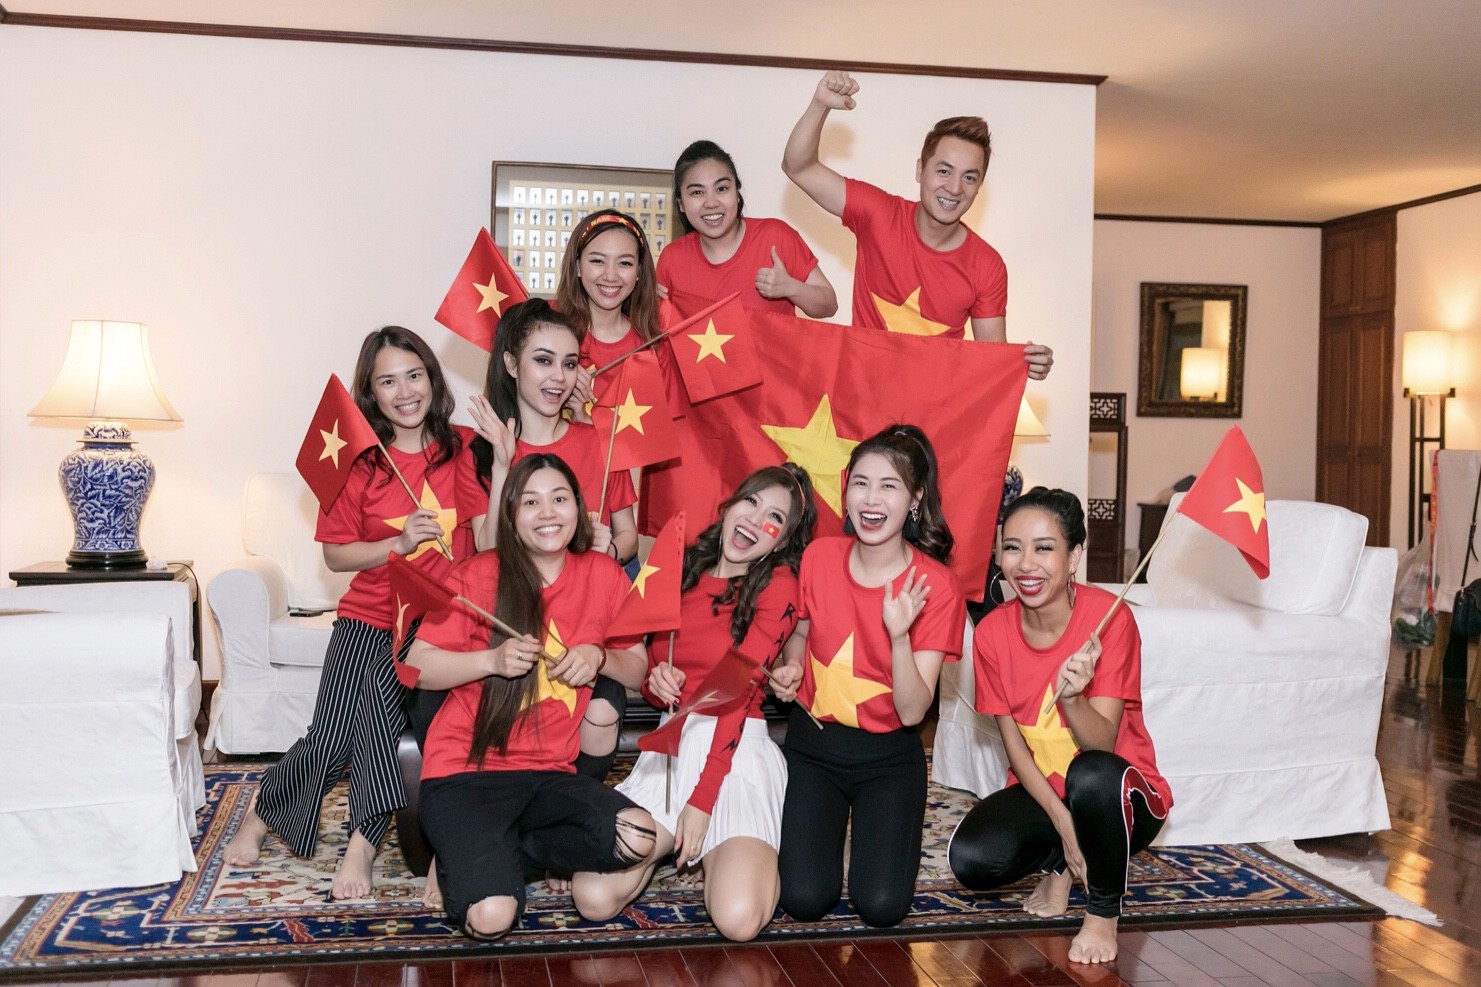 Cuồng nhiệt như Trang Pháp: Tổ chức sinh nhật kết hợp cổ vũ U23 Việt Nam - Ảnh 5.